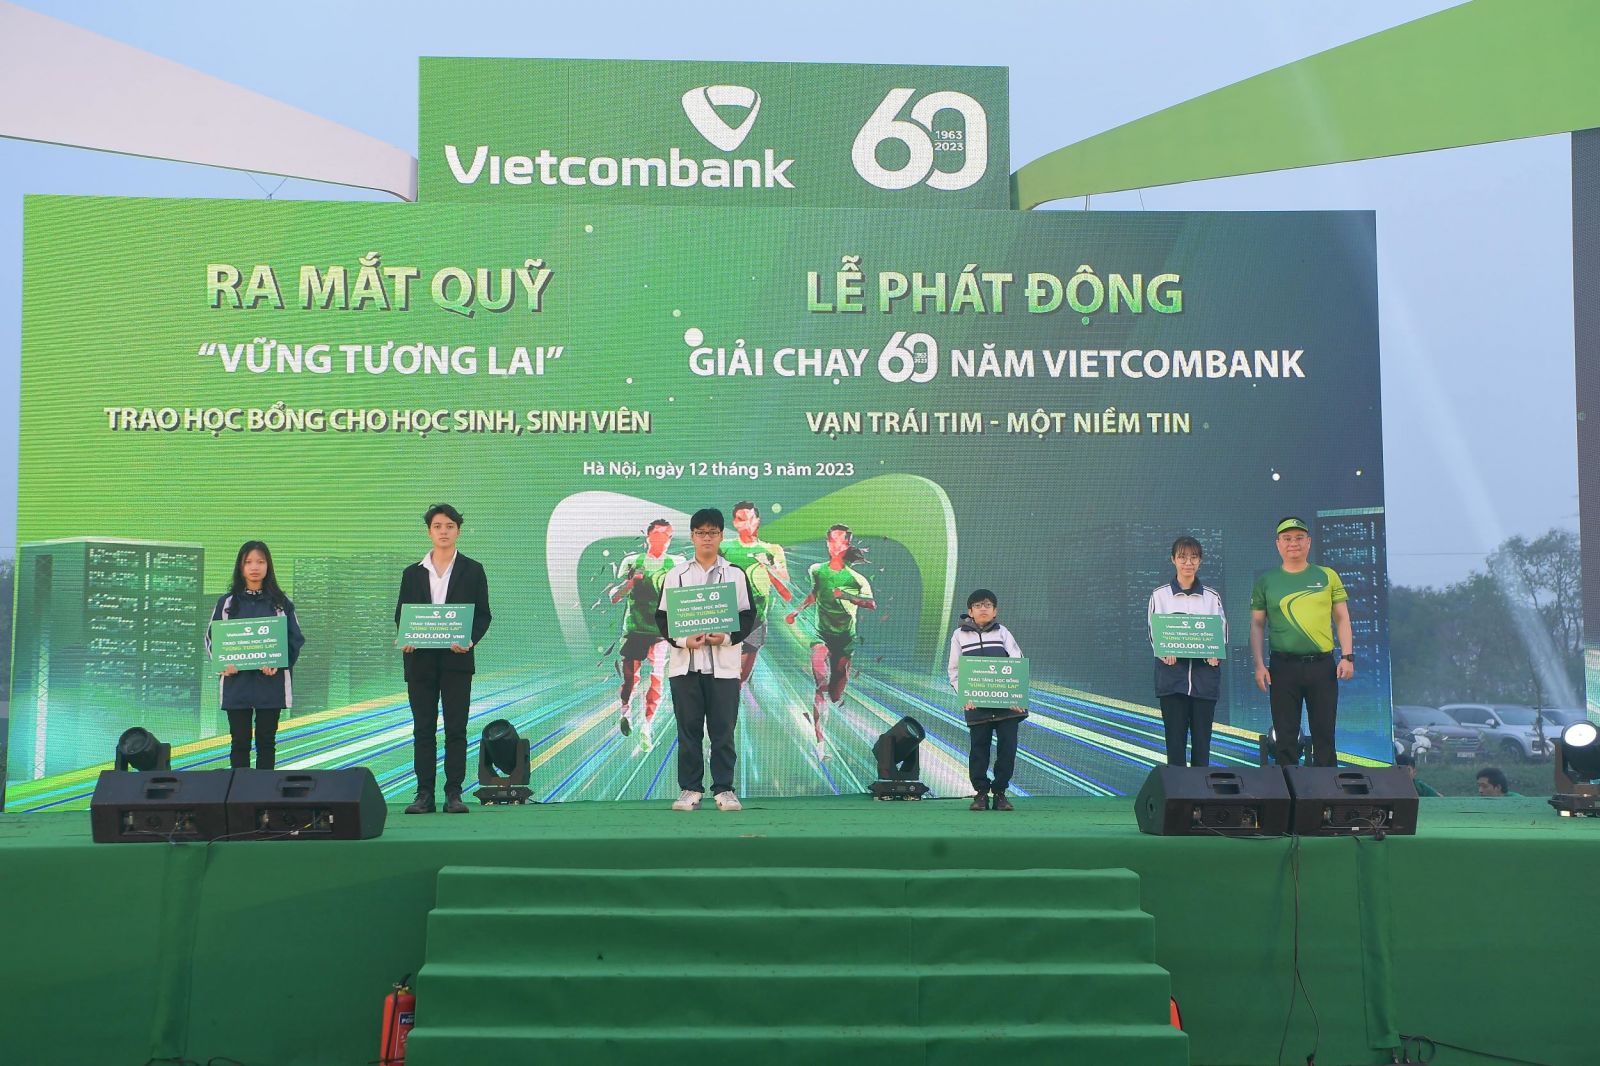 Ông Nguyễn Thanh Tùng - Thành viên Hội đồng quản trị, Tổng Giám đốc Vietcombank (ngoài cùng bên phải) trao học bổng cho các em học sinh nghèo vượt khó, tài năng